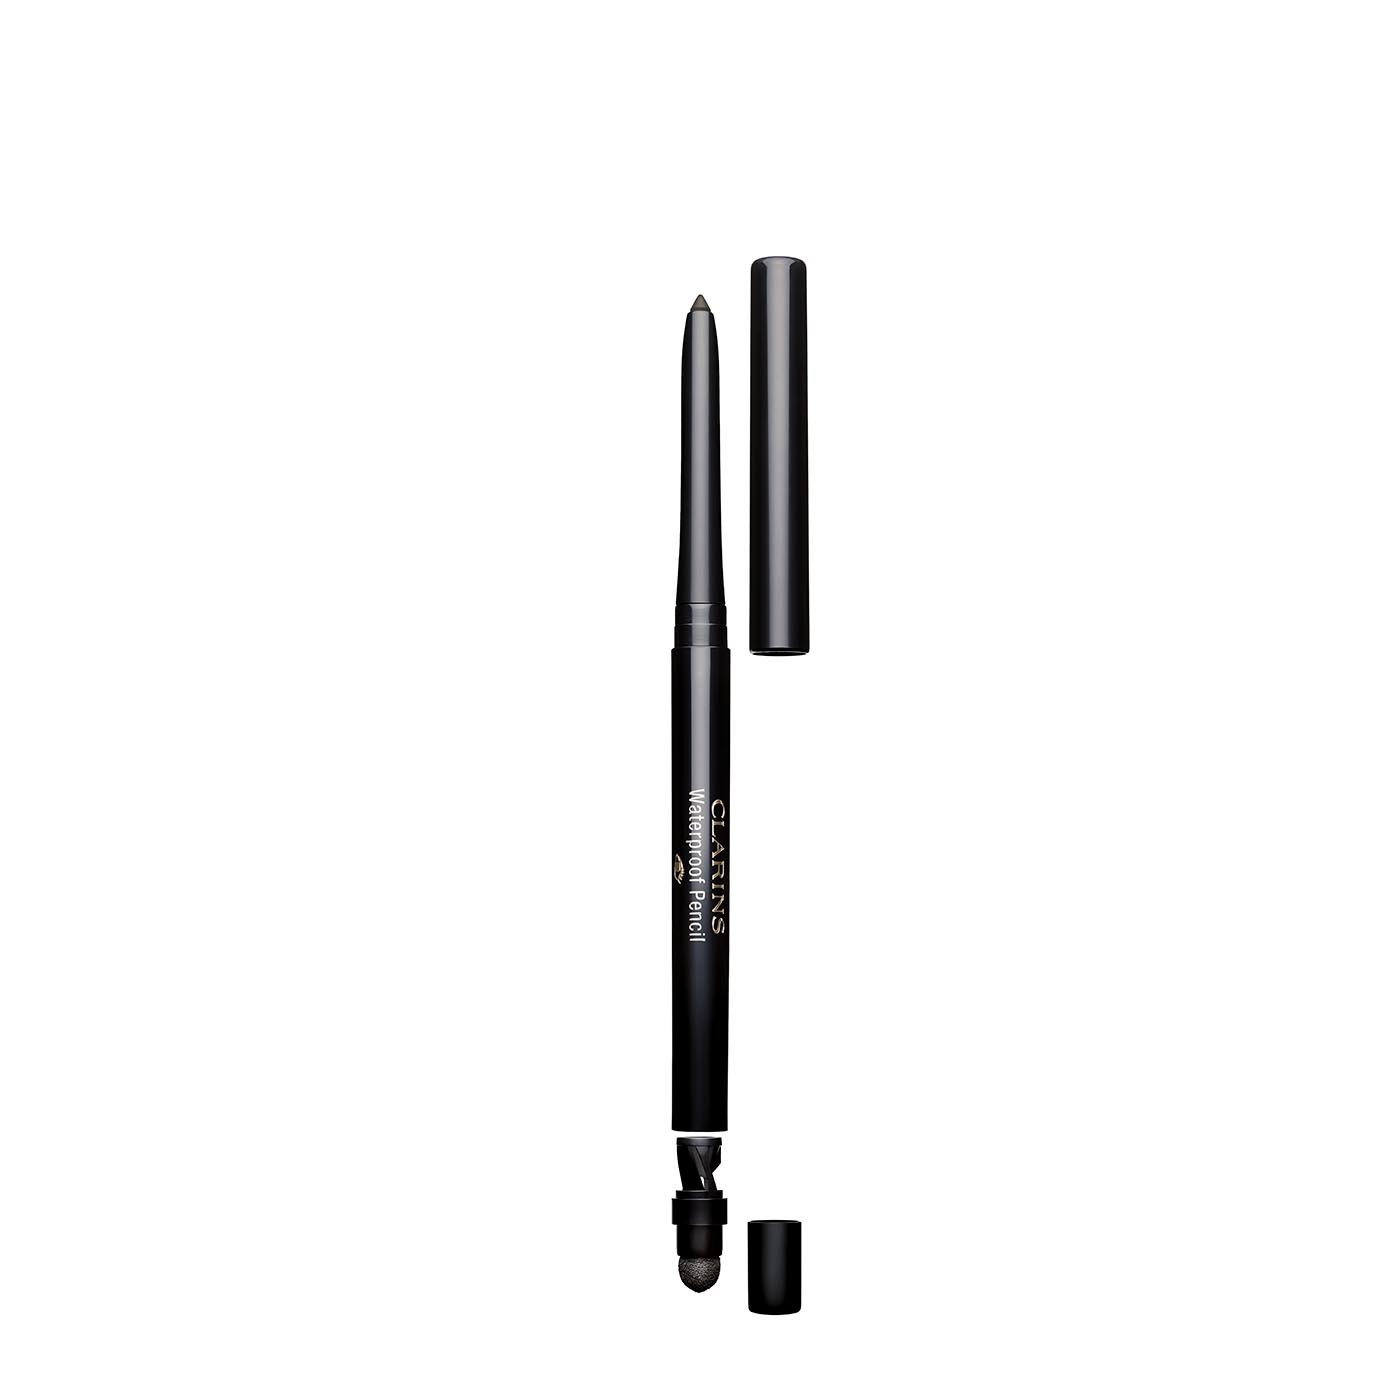 Clarins Waterproof Eye Pencil 06 Gris / Gray Eye Liner